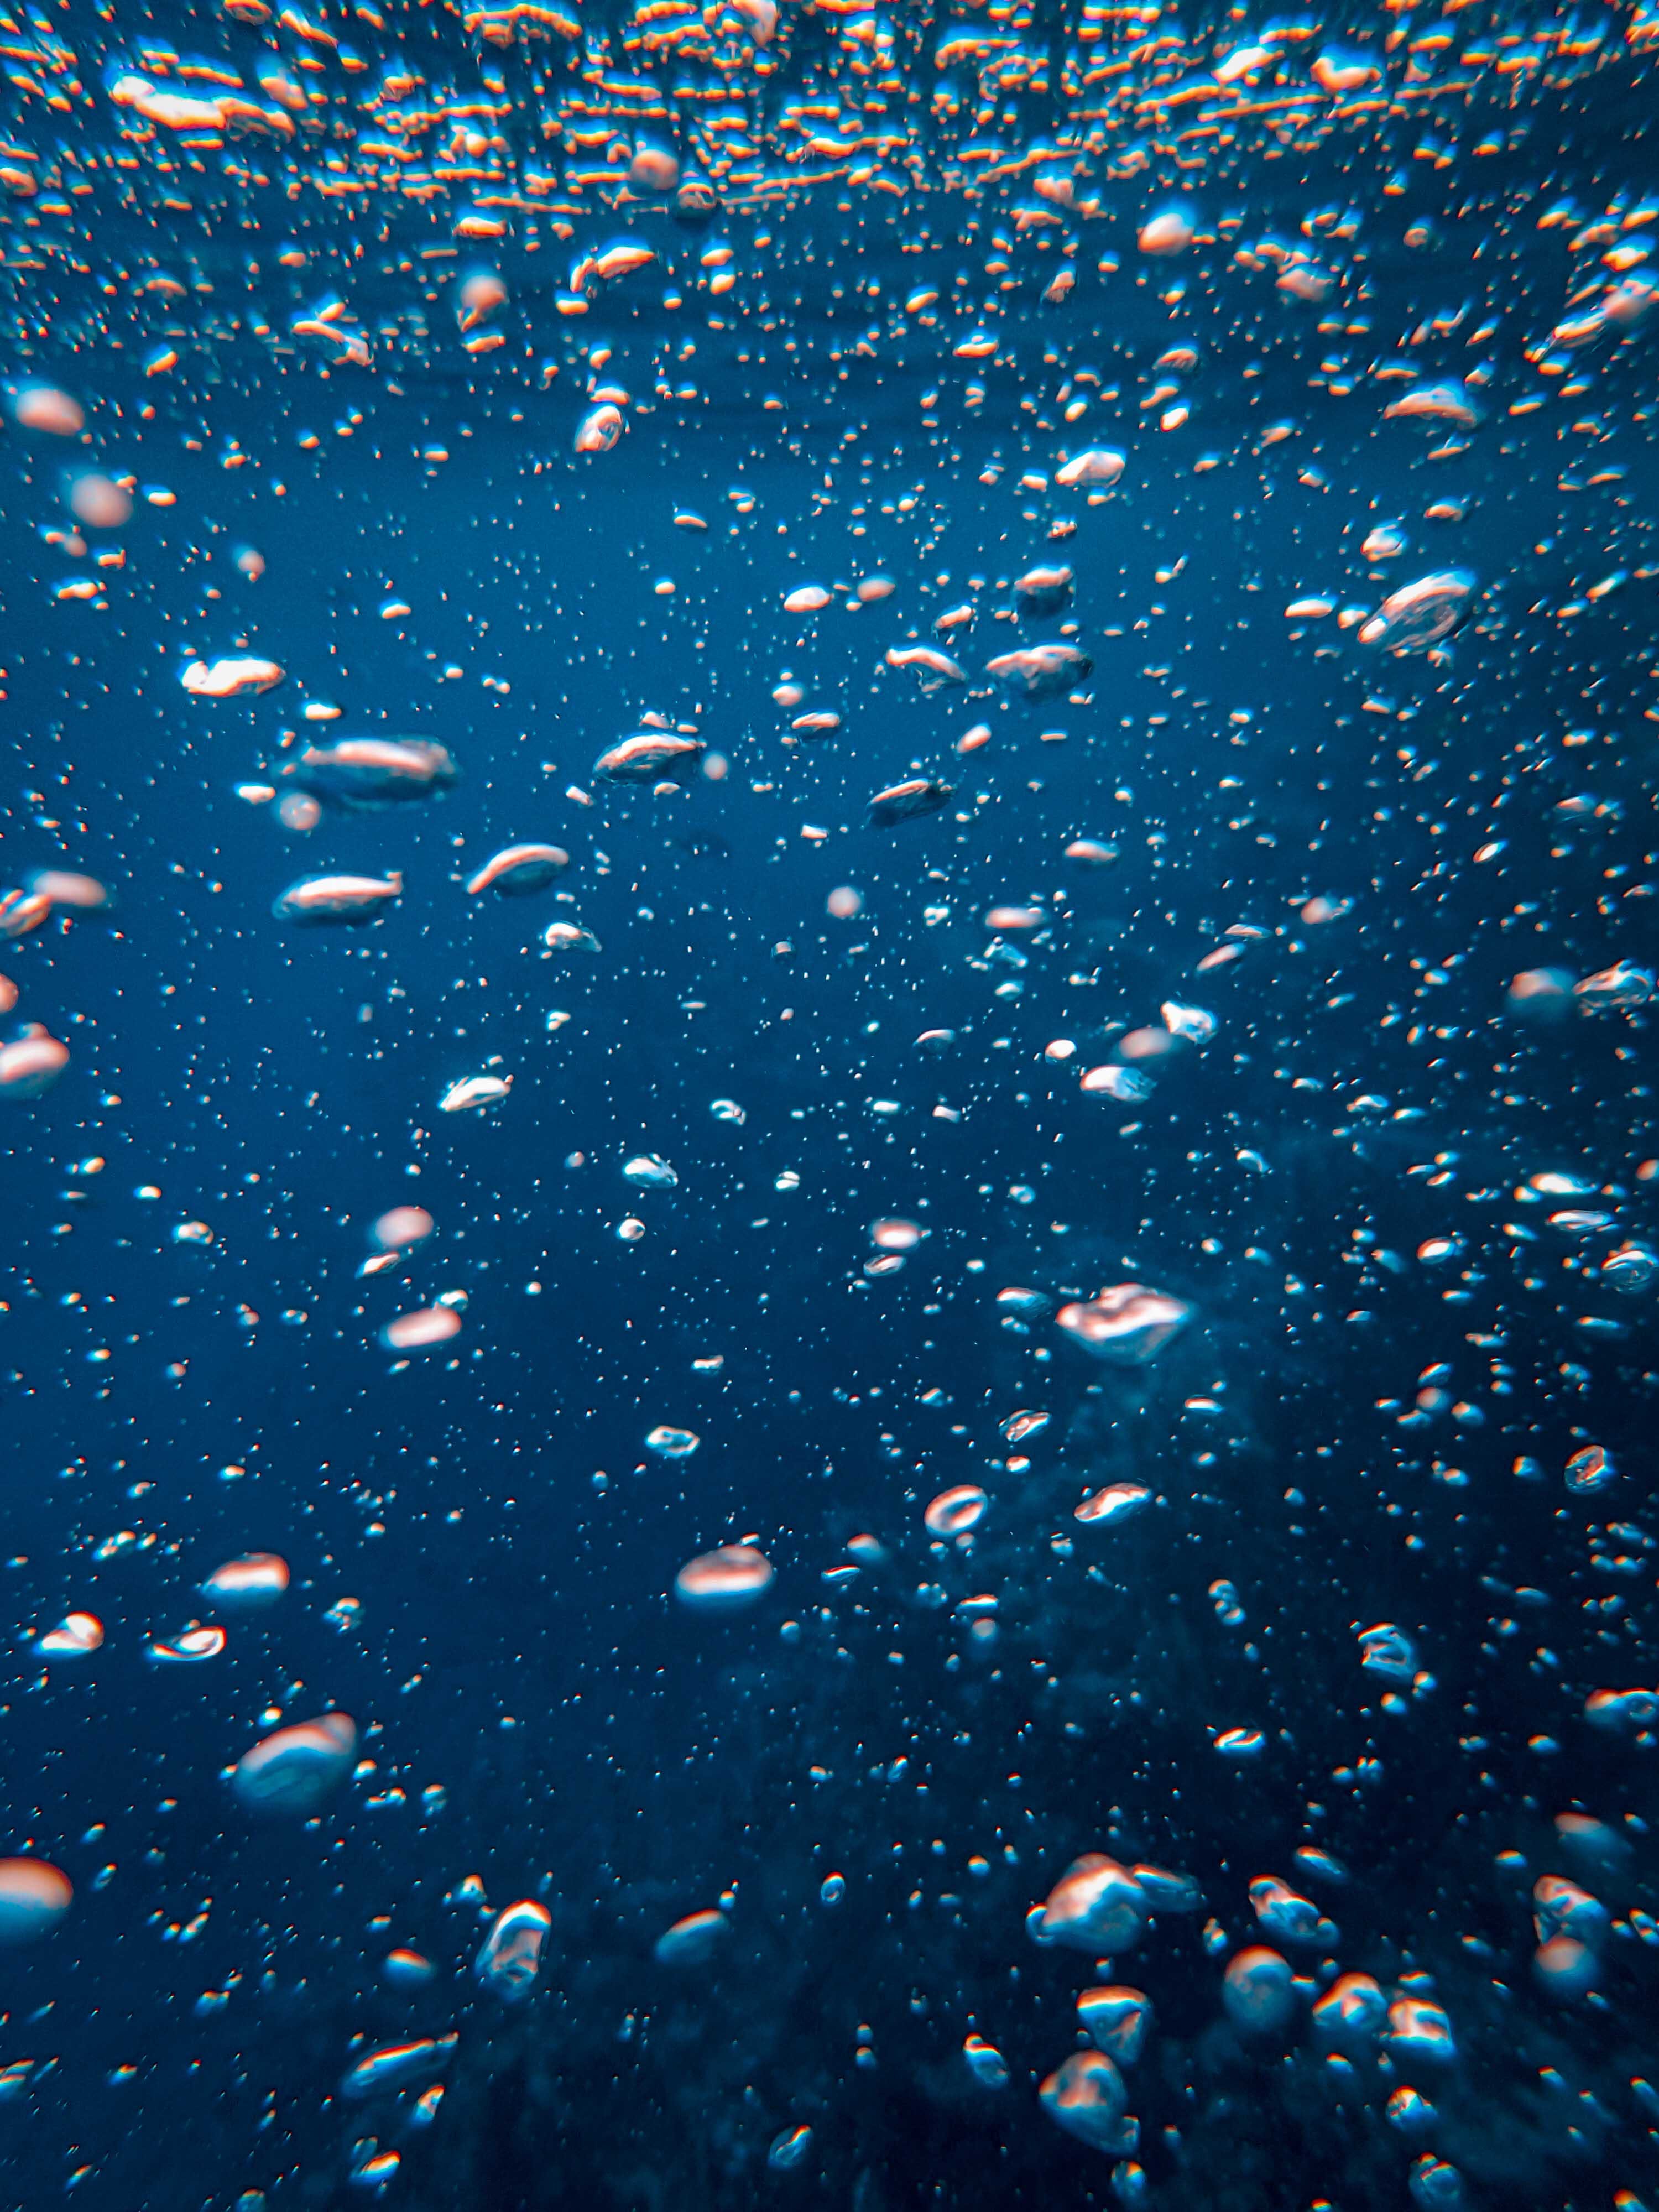  Meer Unterwasserwelt Hintergrundbild 3000x4000. Kostenloses Foto zum Thema: blasen, h2o, meer, samsung hintergrund, samsung hintergrundbilder, türkis, unter wasser, unterwasser, wasser, wasserblasen